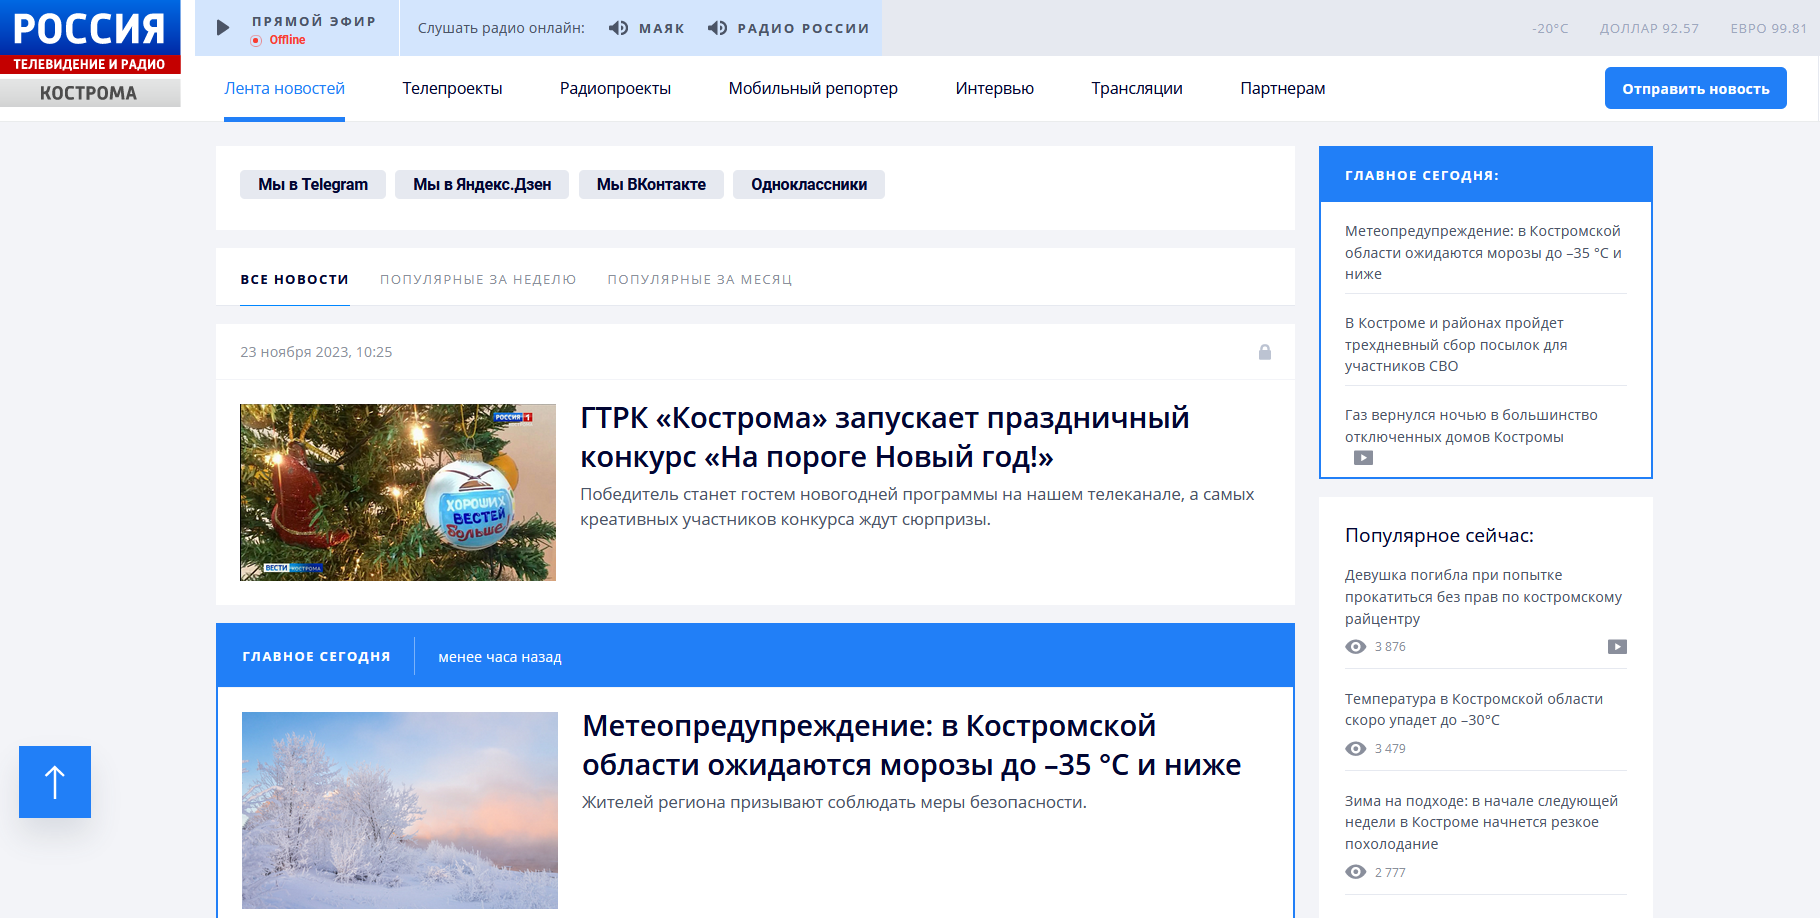 Сайт ГТРК «Кострома» в эти выходные может работать с перебоями